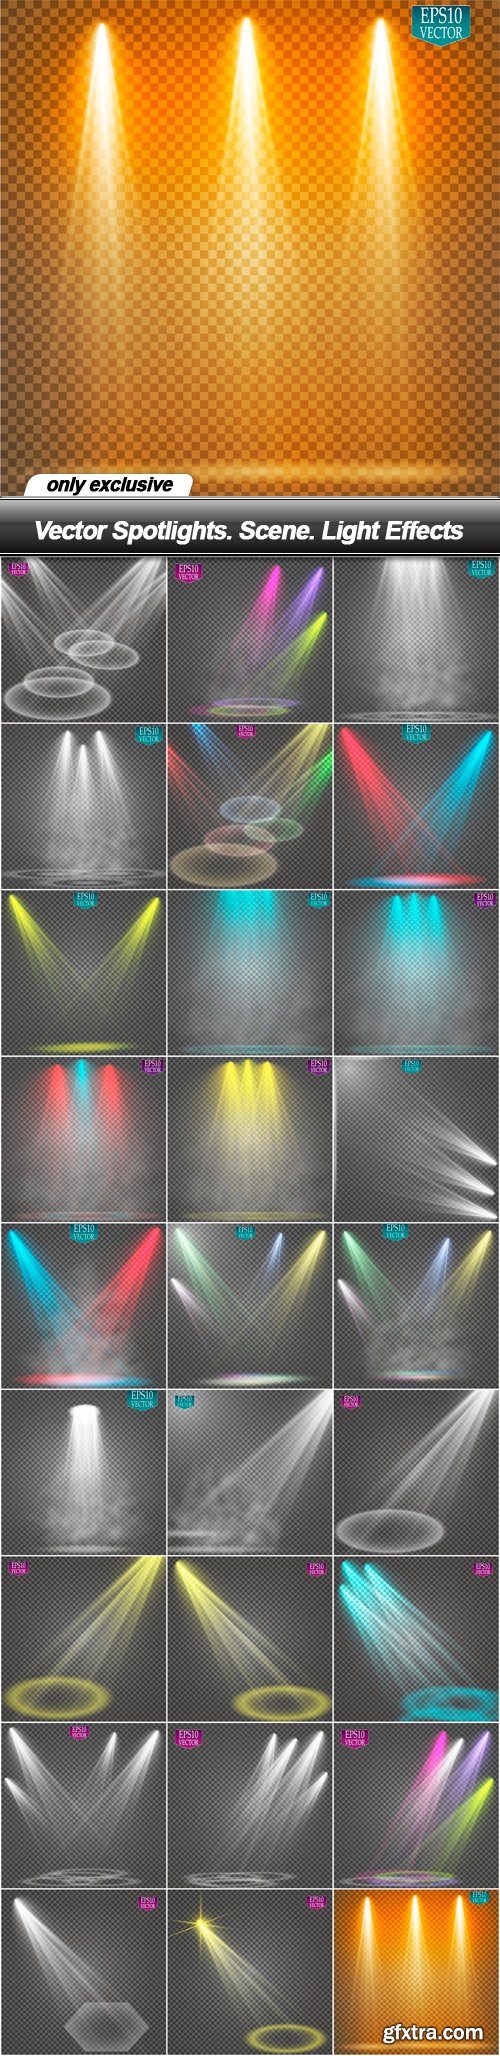 Vector Spotlights. Scene. Light Effects - 27 EPS